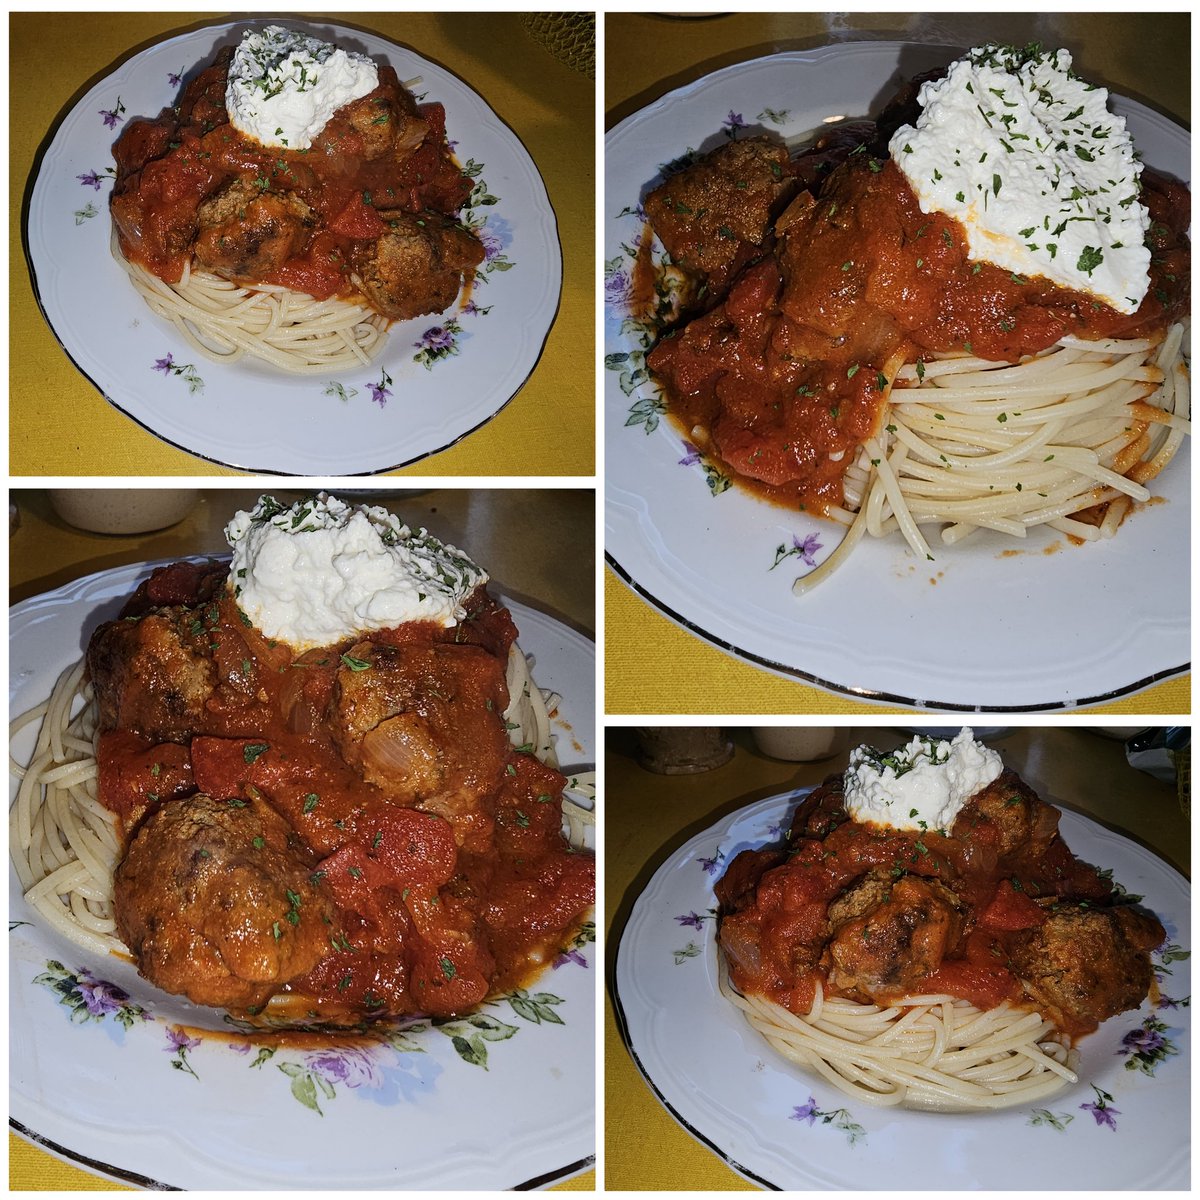 Spaghetti and meatballs tonight on the ol homestead.
#AzrielsAcres 
#HomeCook 
#FoodDork